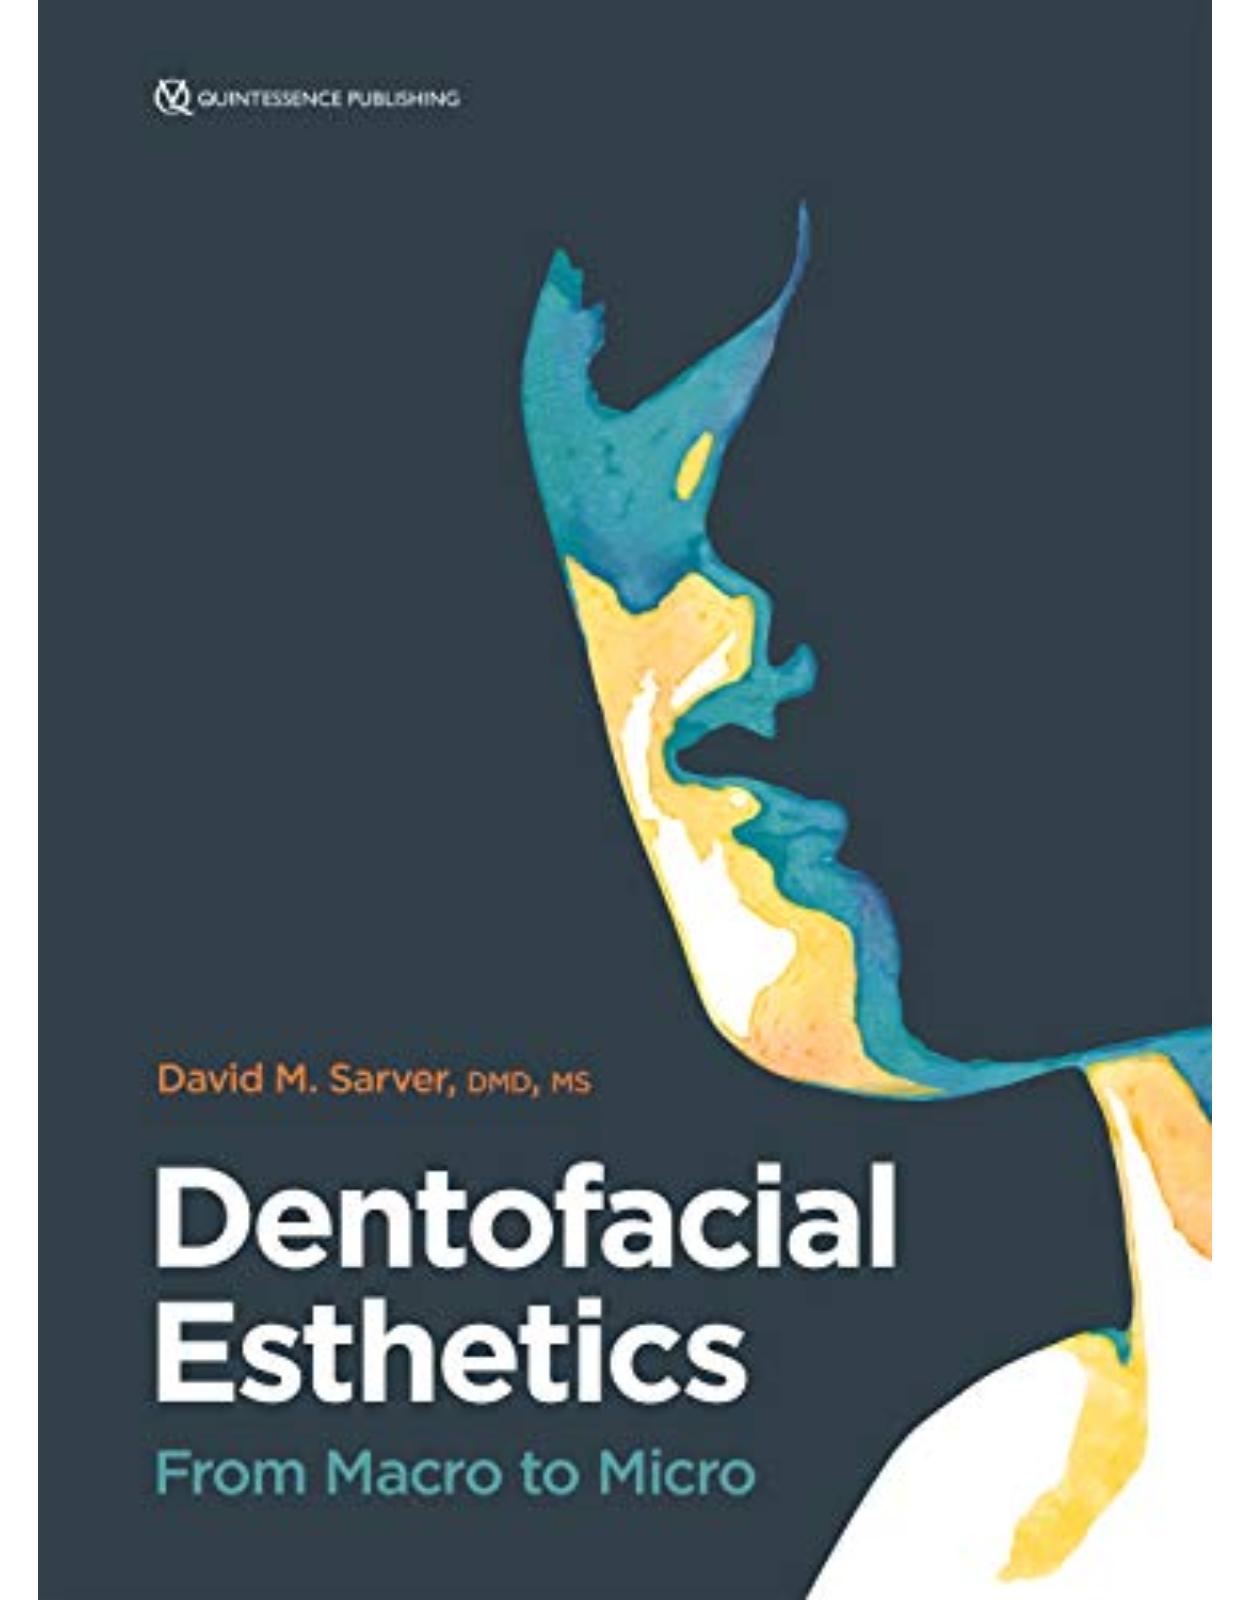 Dentofacial Esthetics: From Macro to Micro